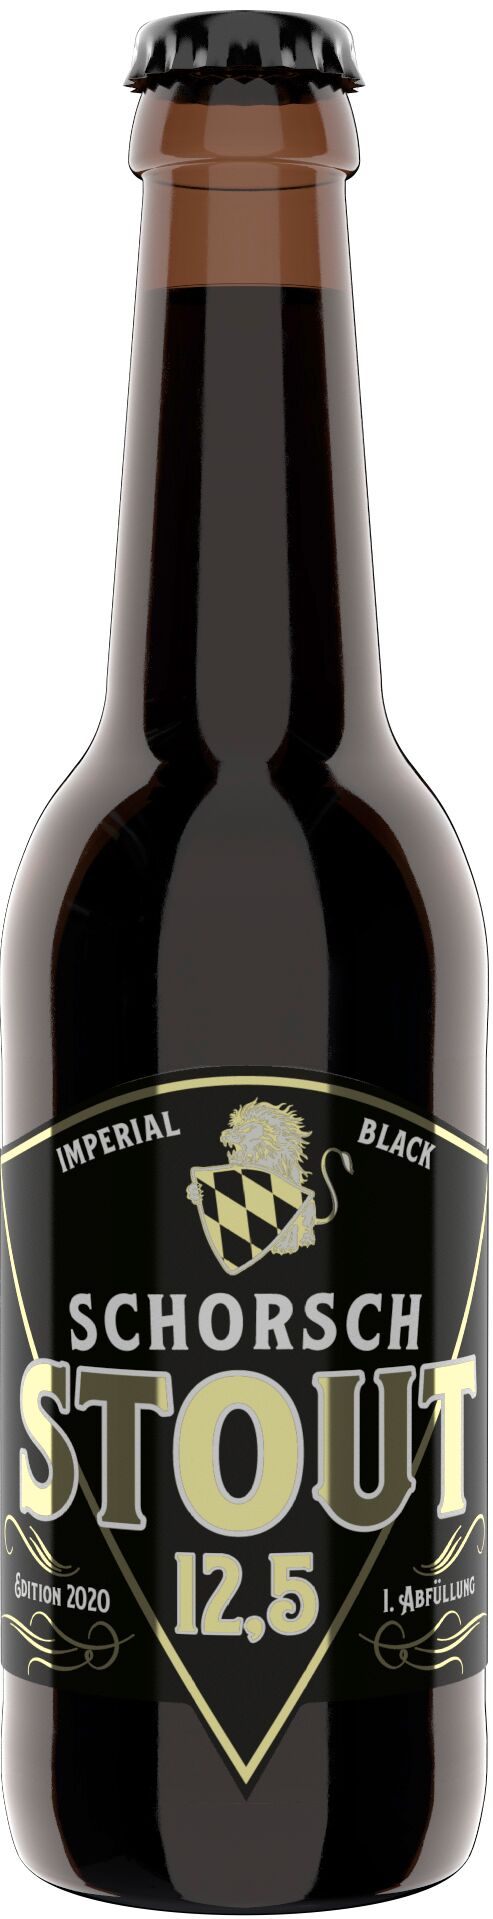 Schorschbräu - Schorsch Imperial Black Stout